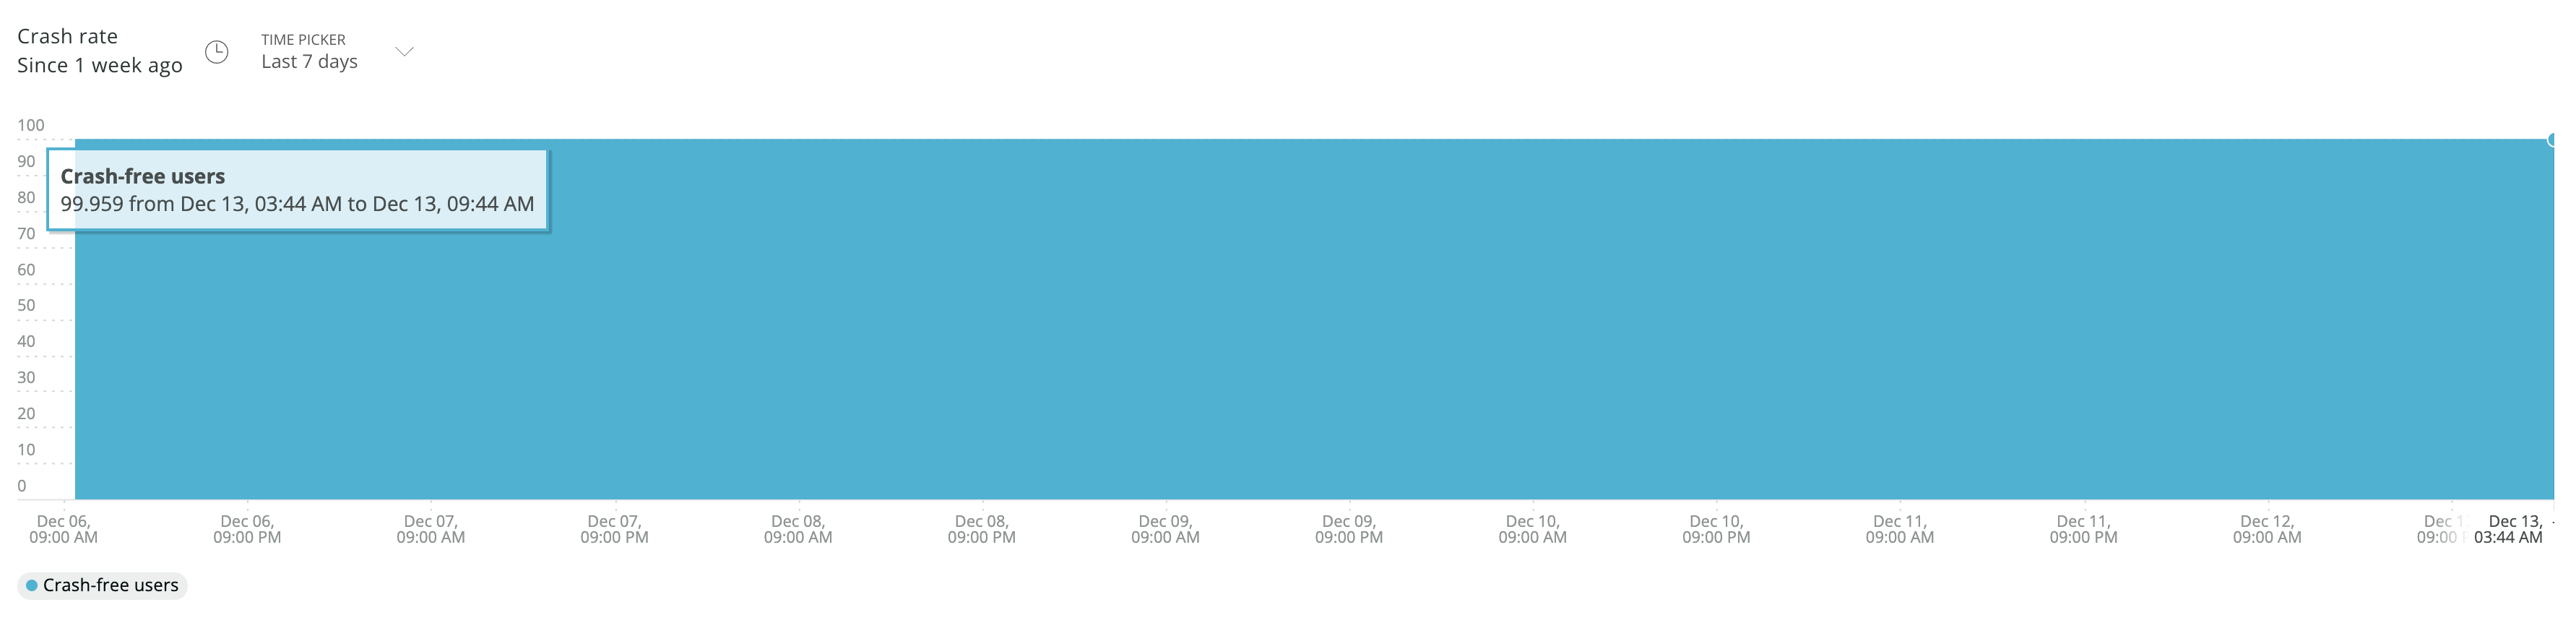 直近1週間のクラッシュフリーユーザー率の推移。99.9%を維持